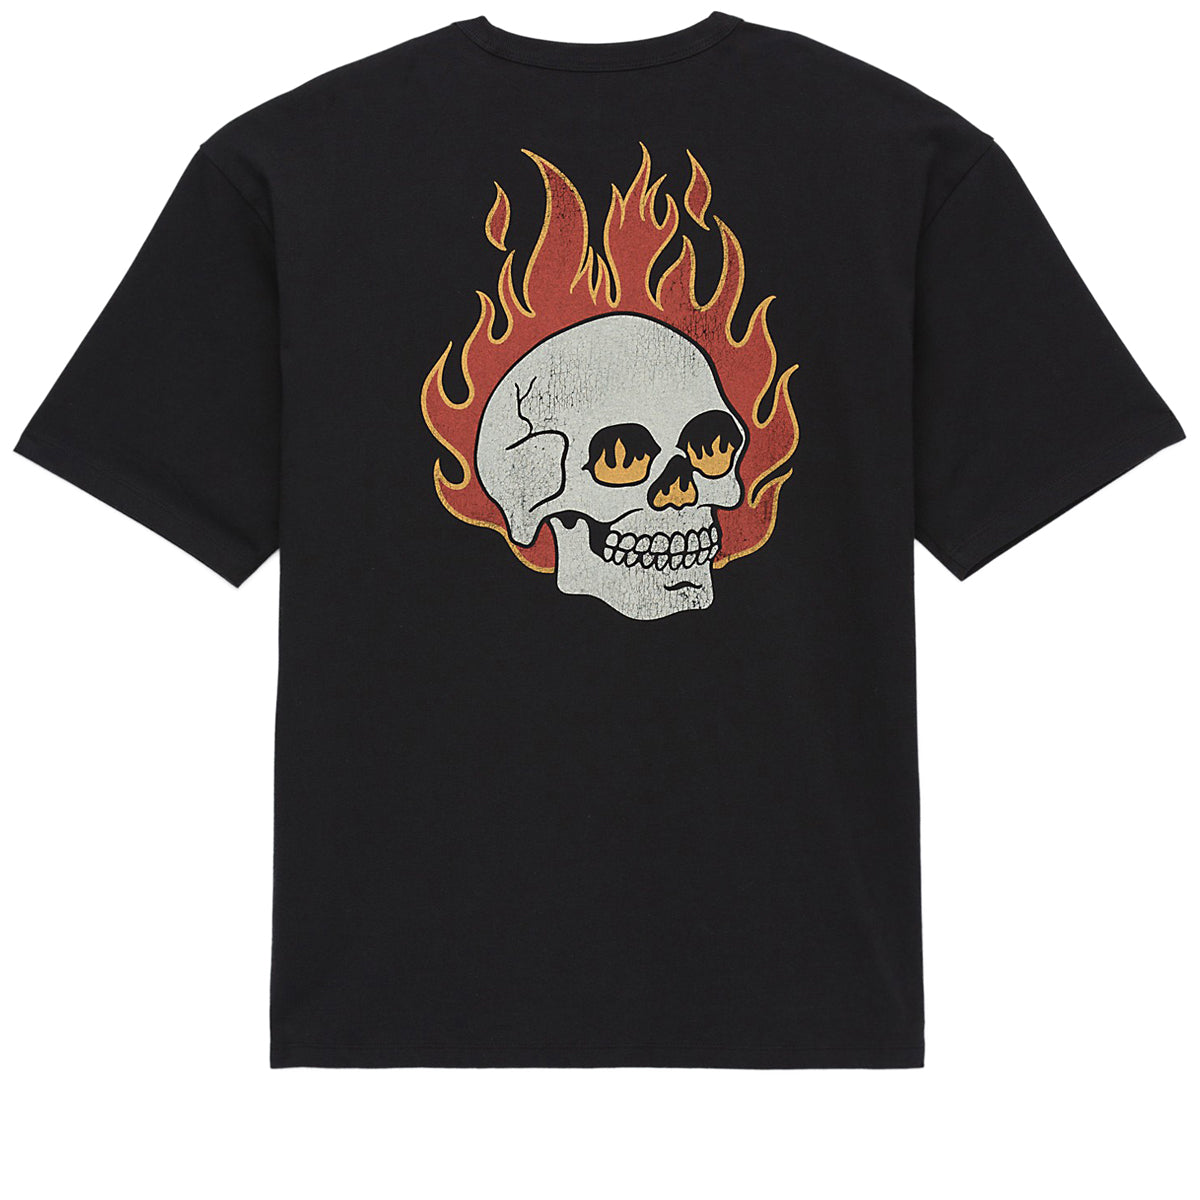 Vans Flaming Skull Washed T-Shirt - Black image 1